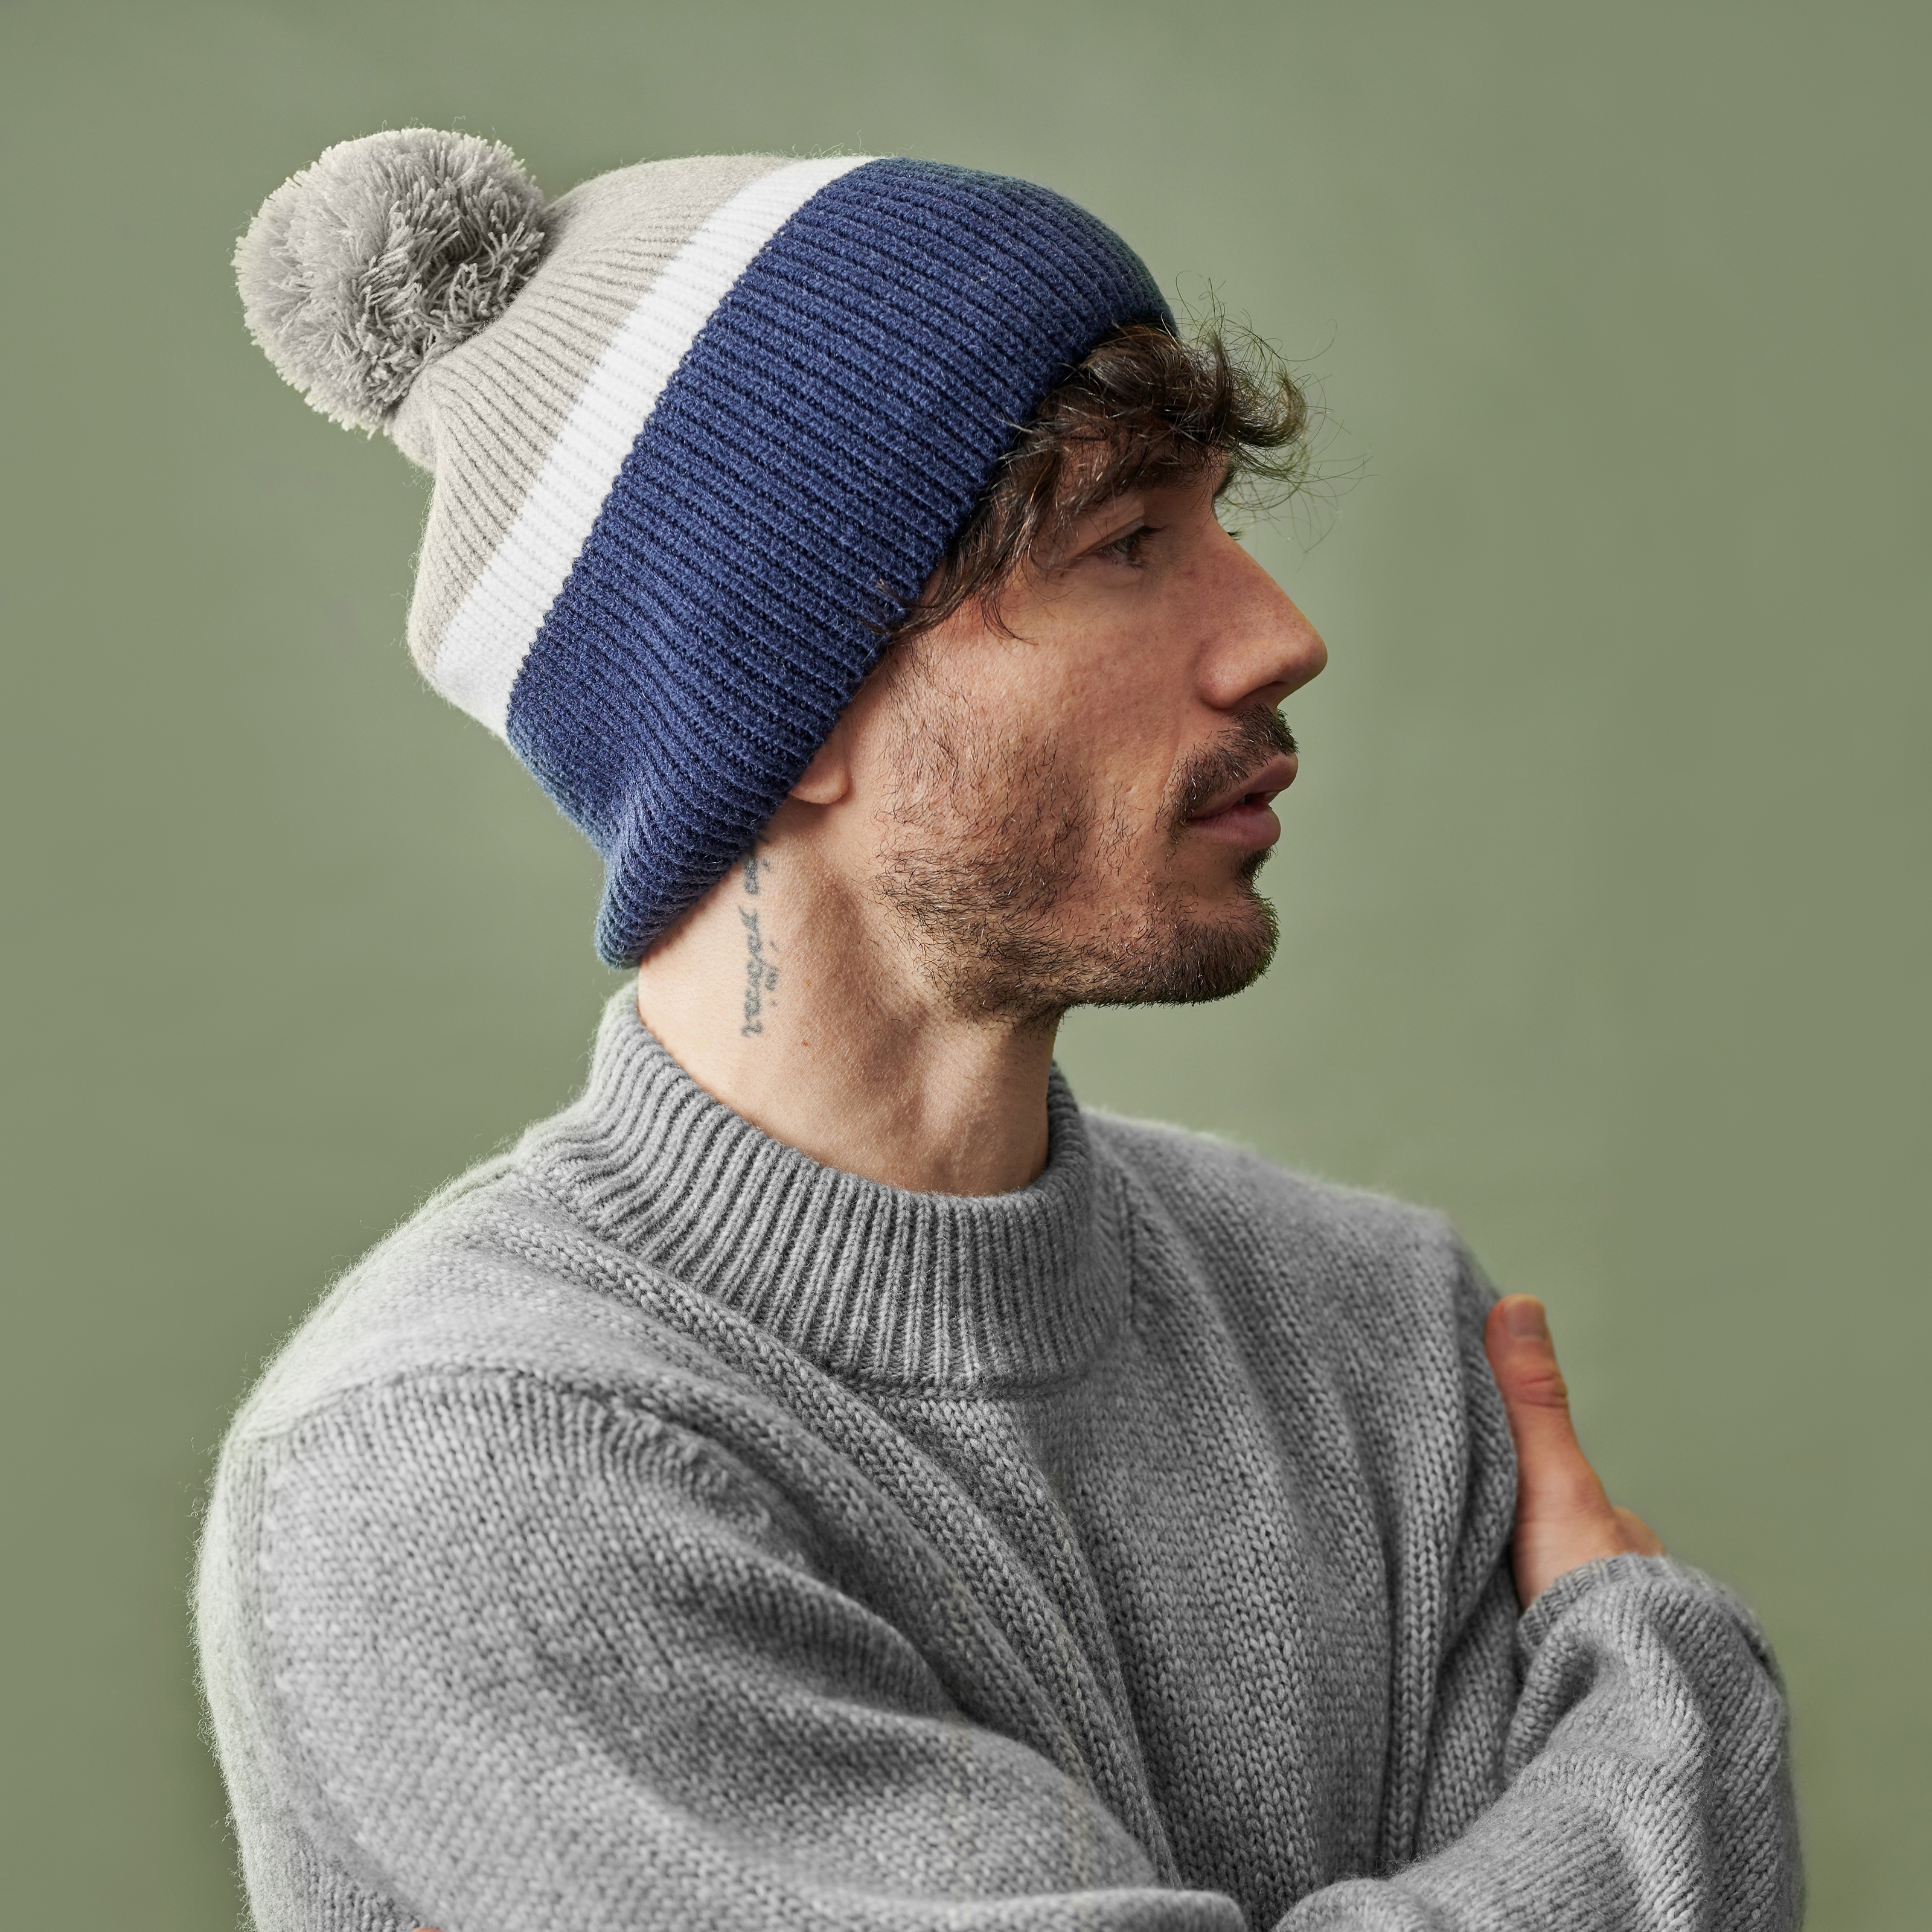 Comment porter un bonnet en 9 façons étonnantes et cool - Homme